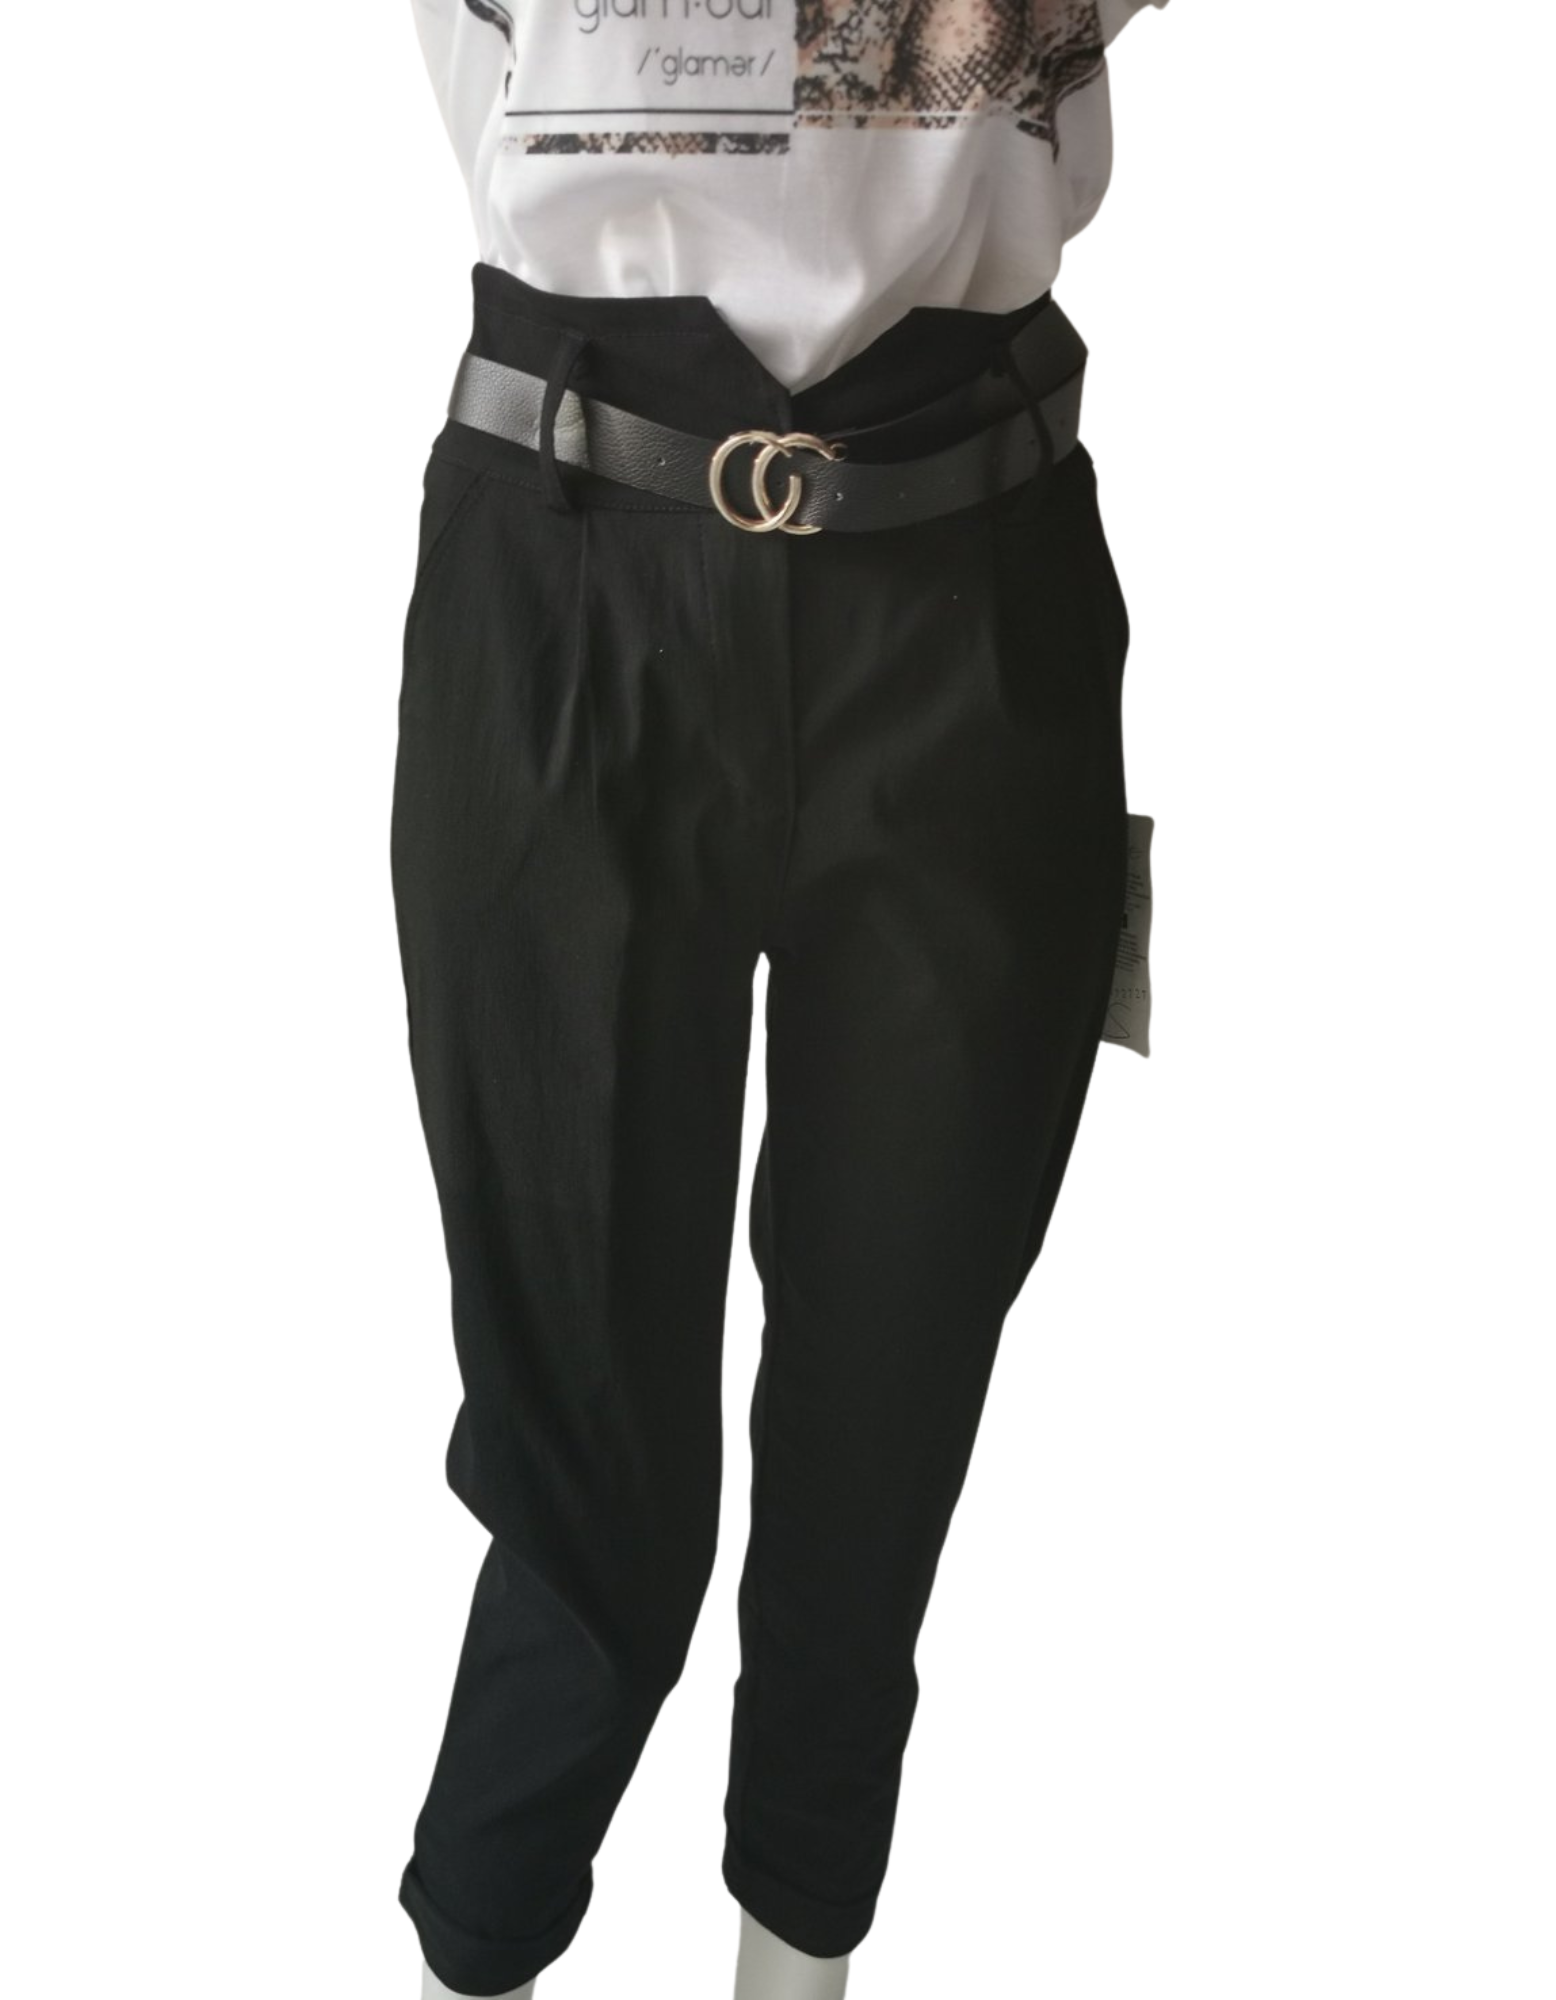 Pantalon unie toile noir avec ceinture